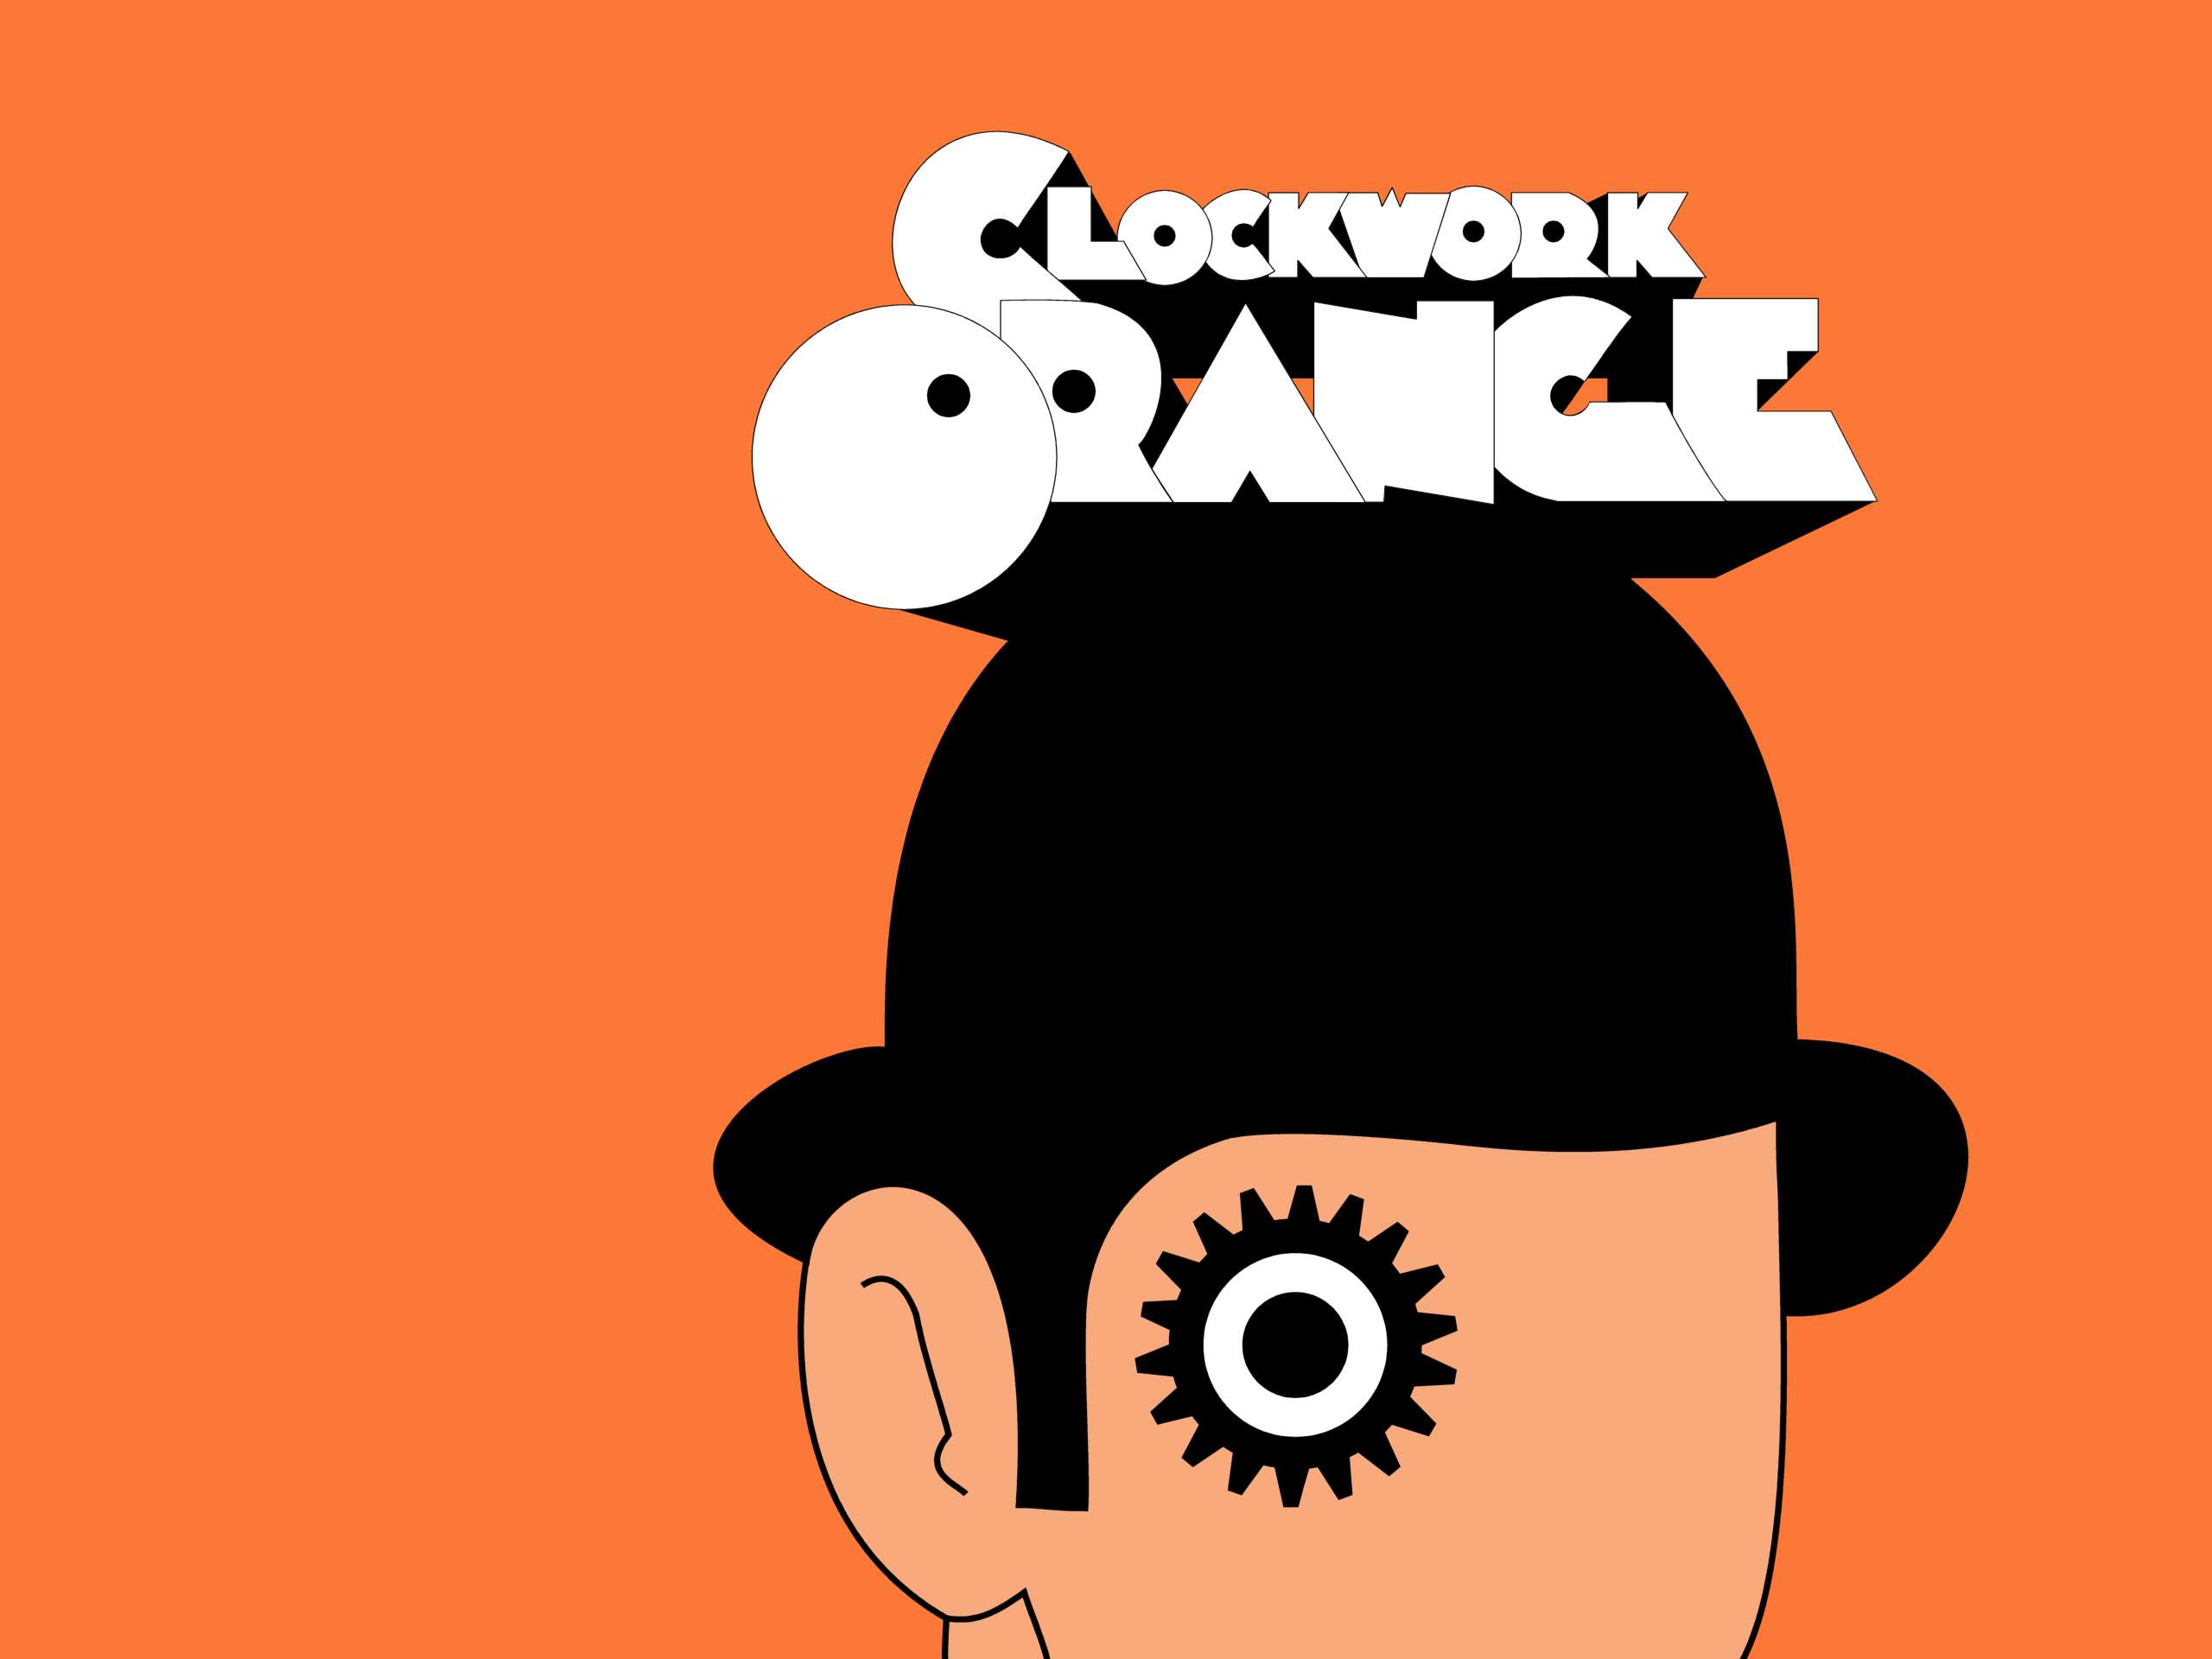 Clockwork Orange, Stanley Kubrick, simple background - desktop wallpaper